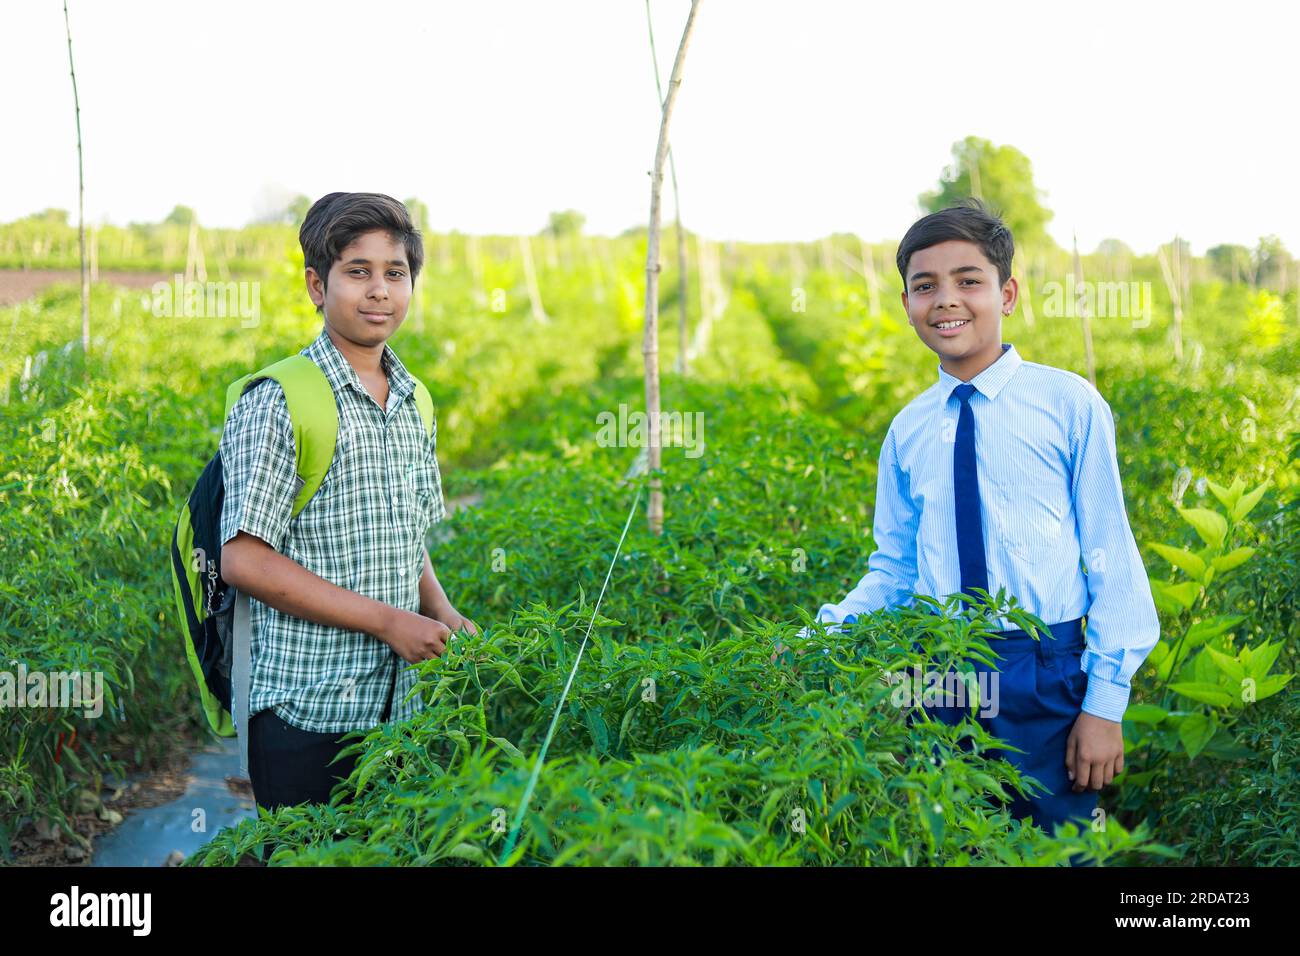 Indian school kids working in farm, happy farmer Stock Photo